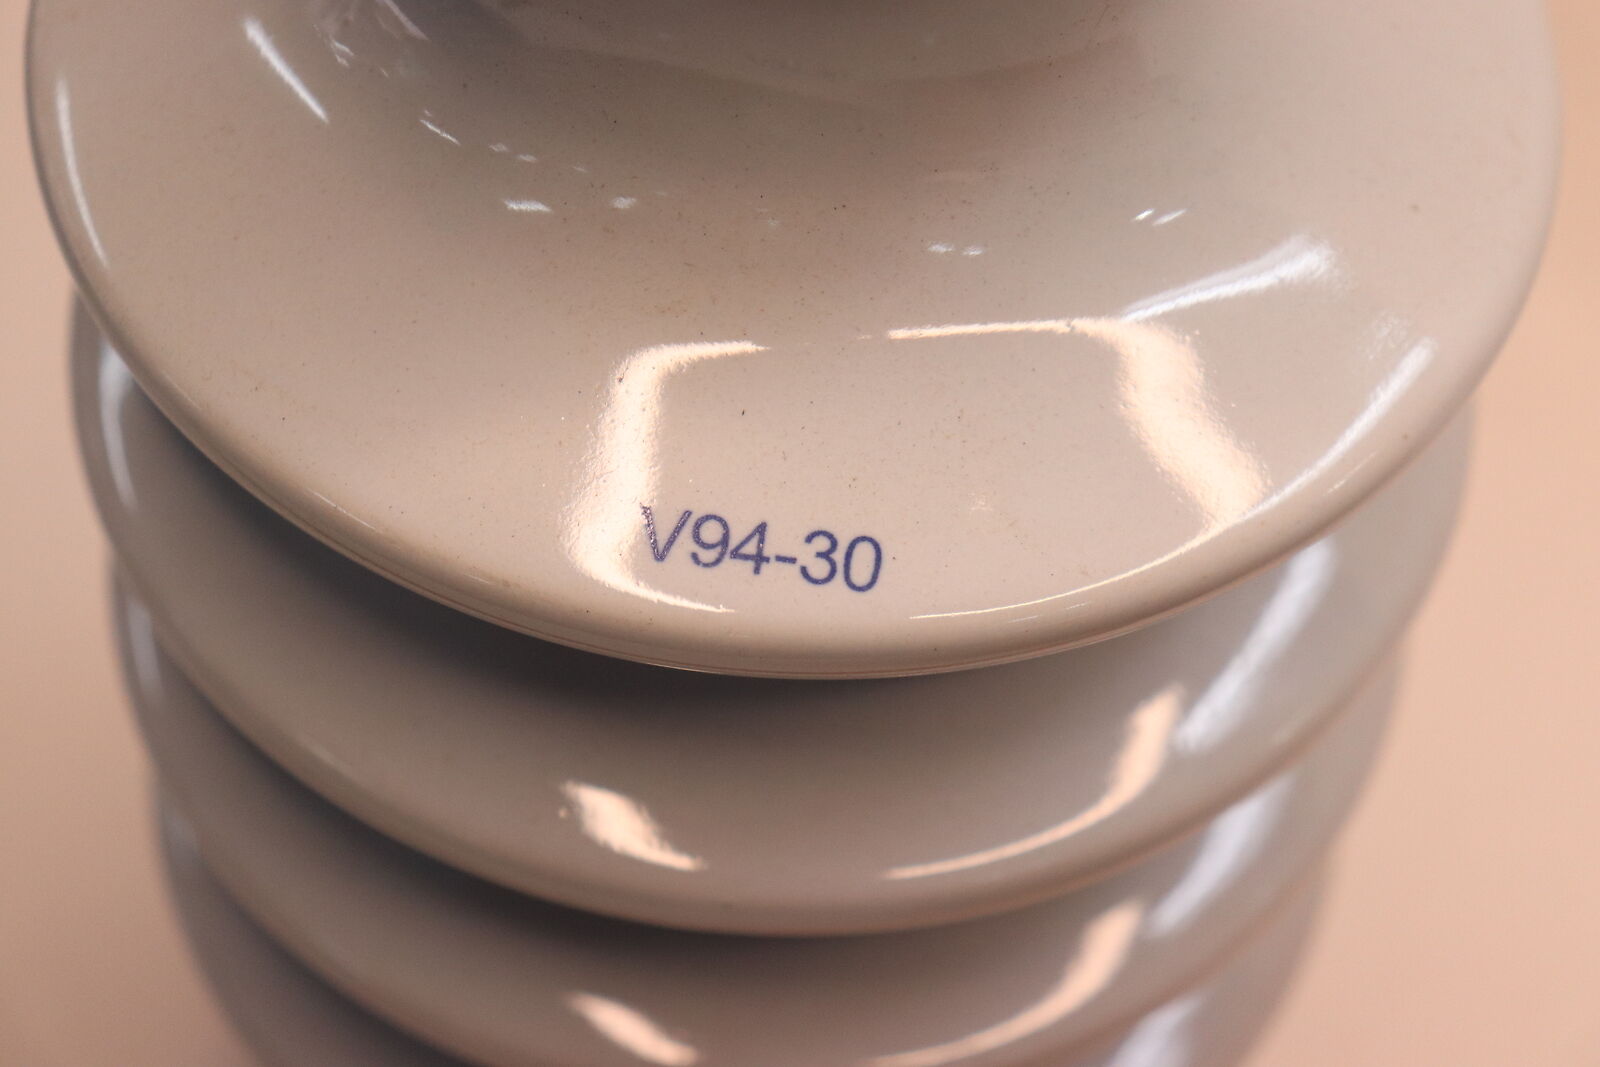 Victor Porcelain Insulator v94-30 62127593 2127